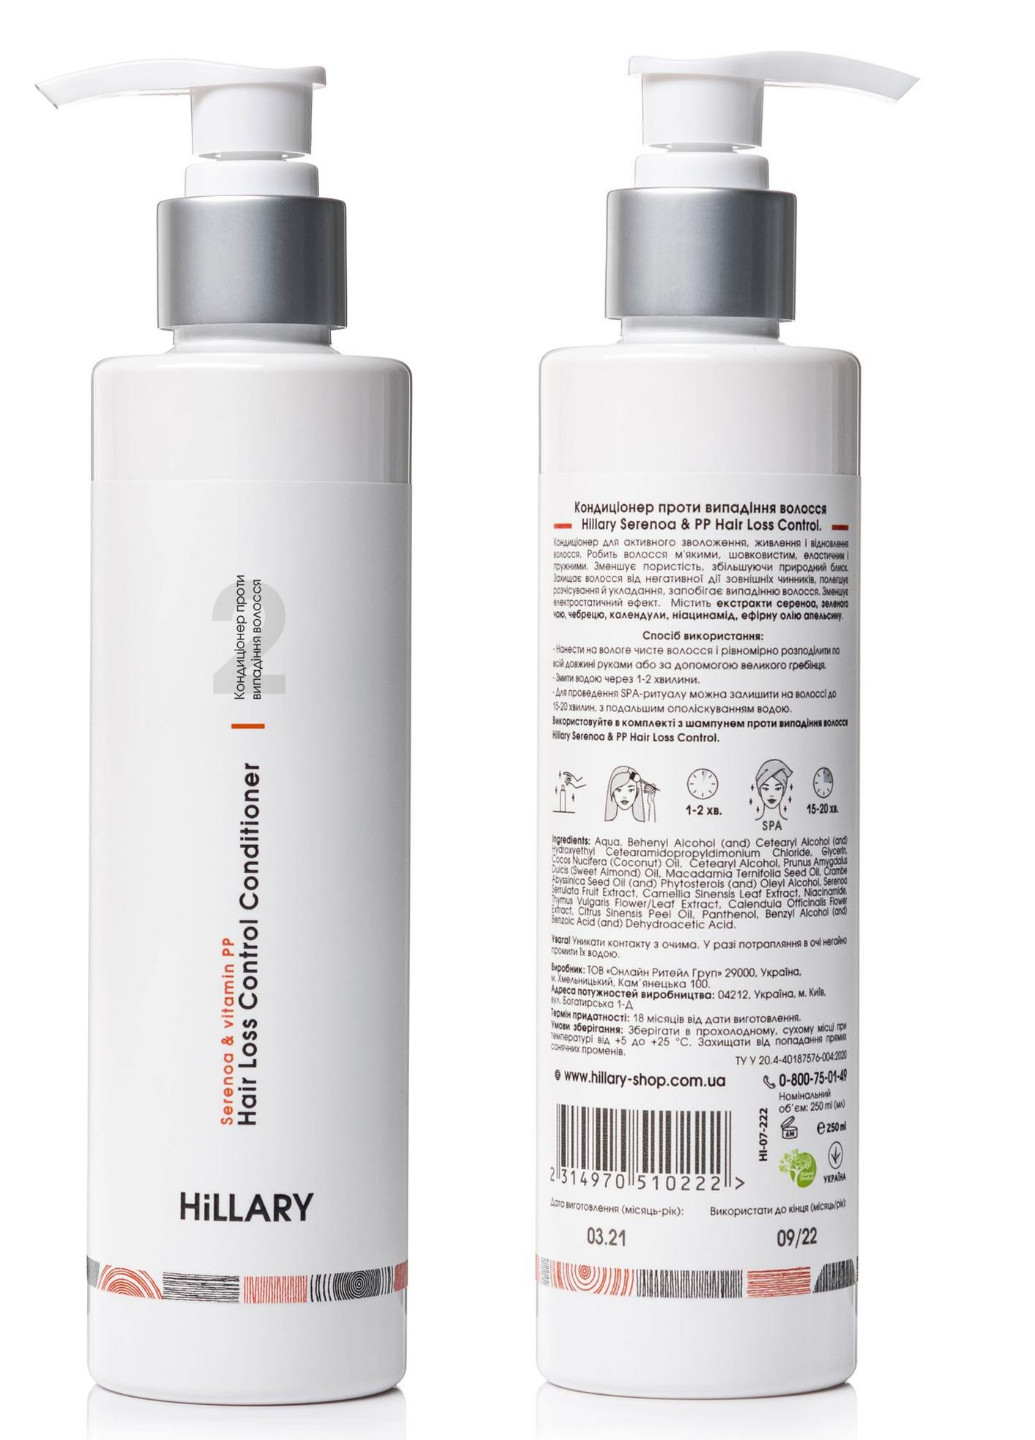 Комплекс против выпадения волос + Сыворотка для волос Concentrate Serenoa Hillary (254015469)